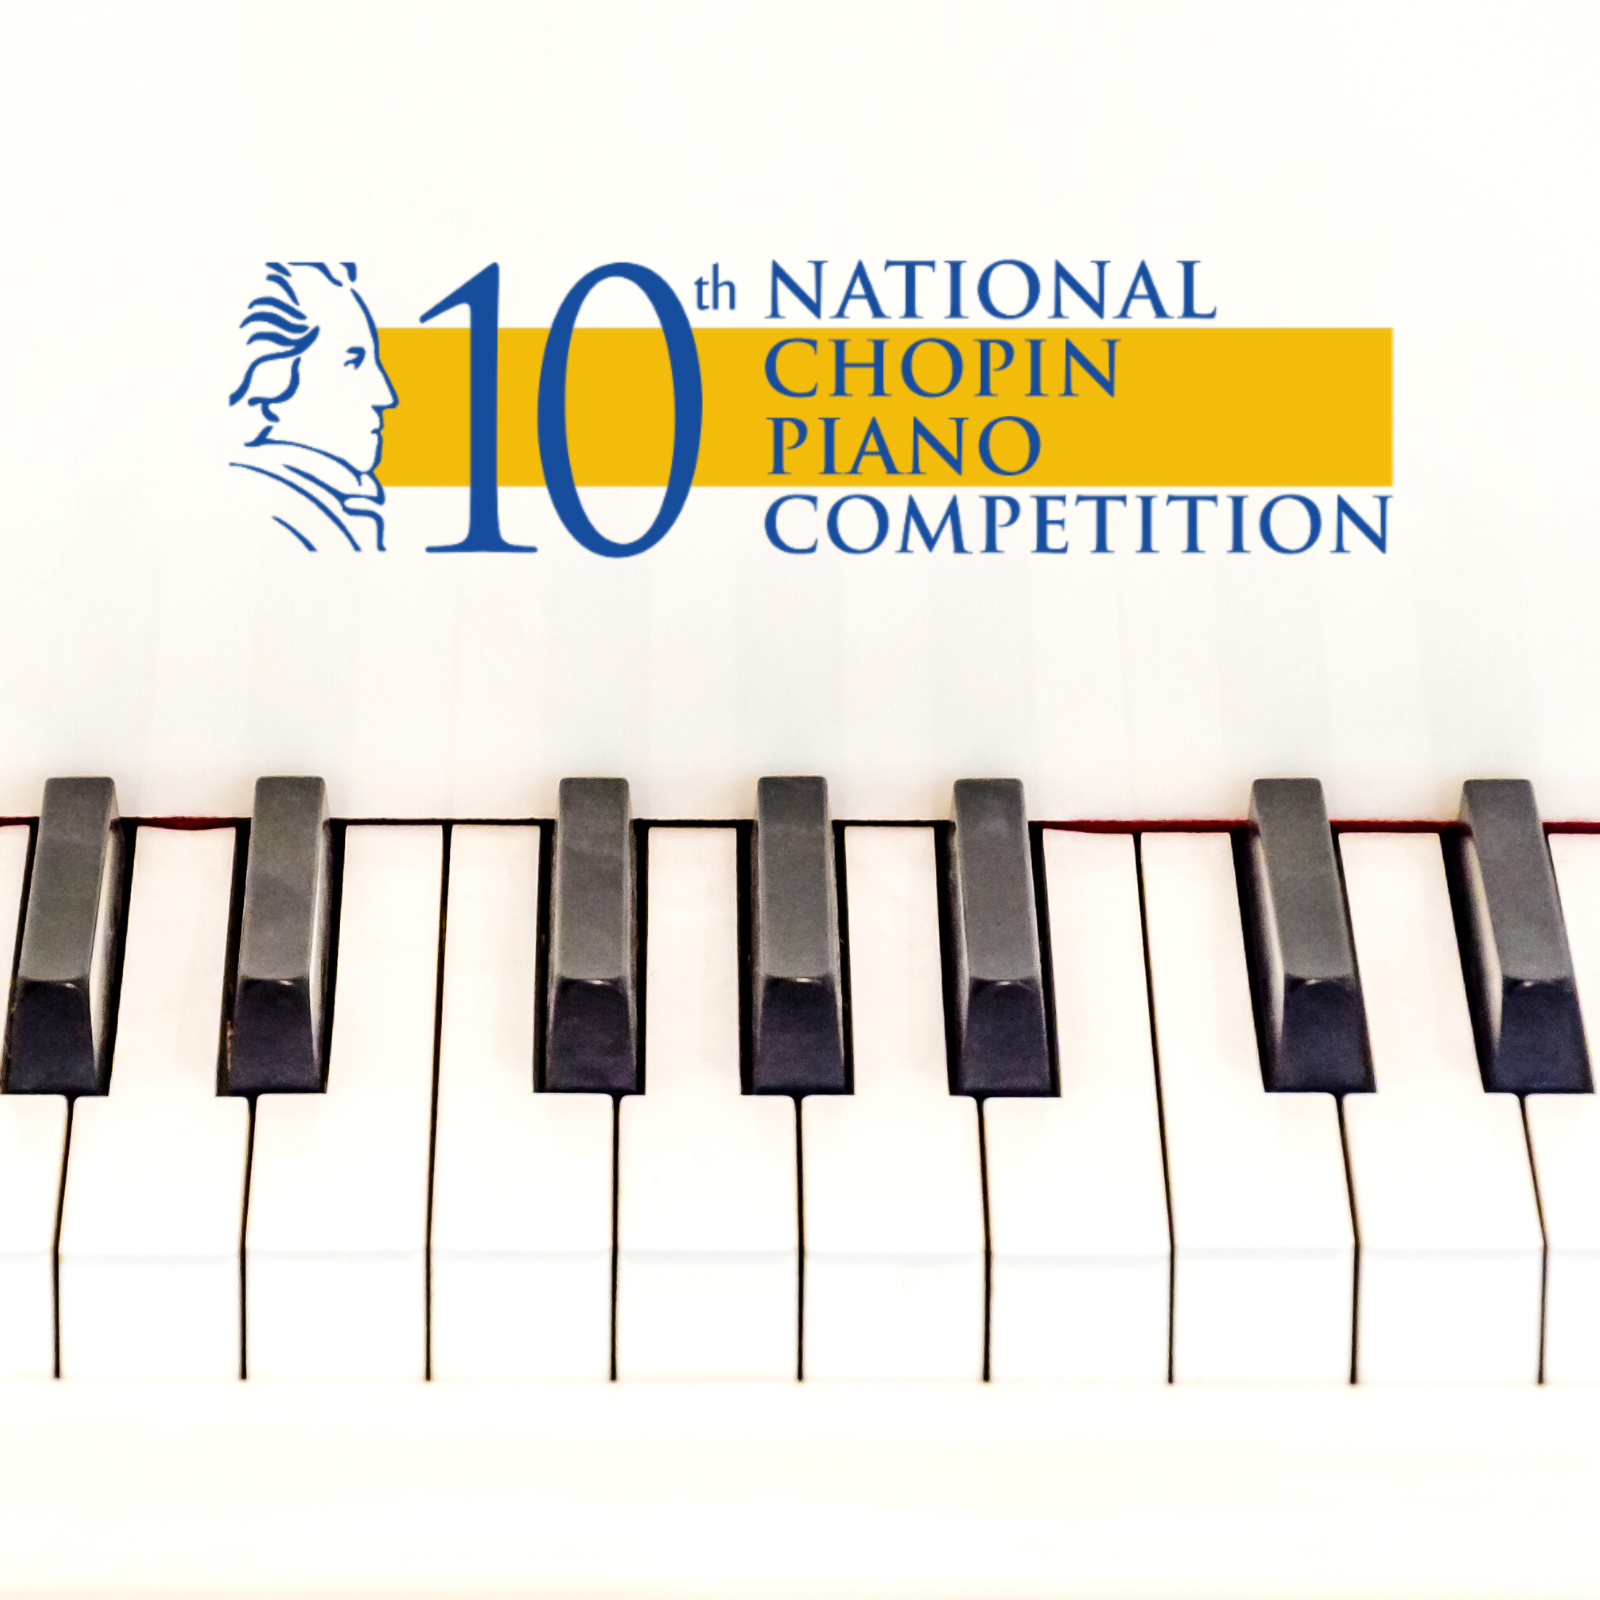 National Chopin Piano Competition: Preliminary, Quarter & Semi Finals